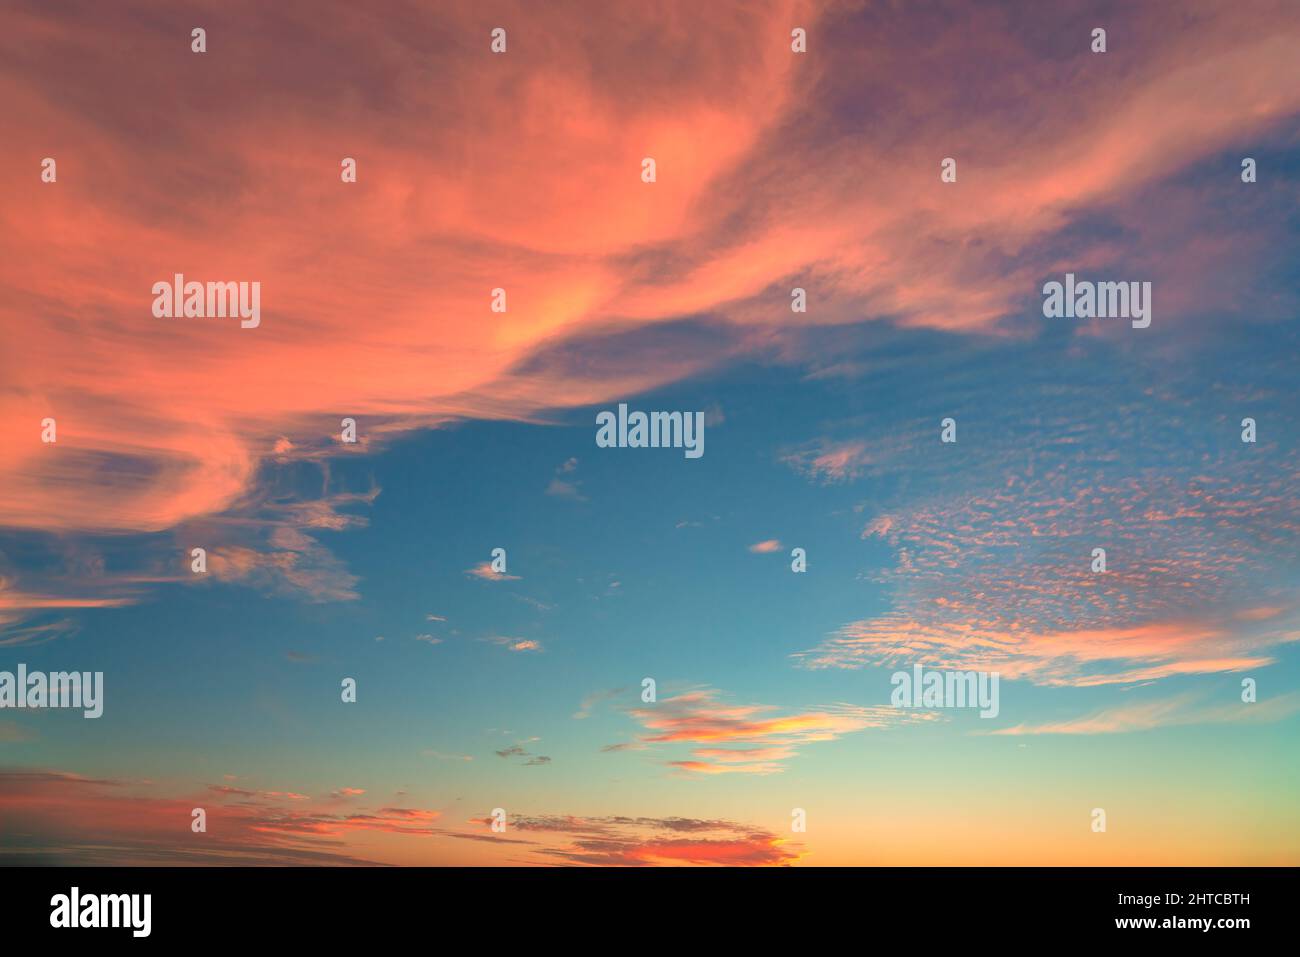 Recouvrement d'arrière-plan texture ciel au coucher du soleil. Nuages rouges, orange et violets spectaculaires. Photographie haute résolution idéale pour le remplacement du ciel Banque D'Images